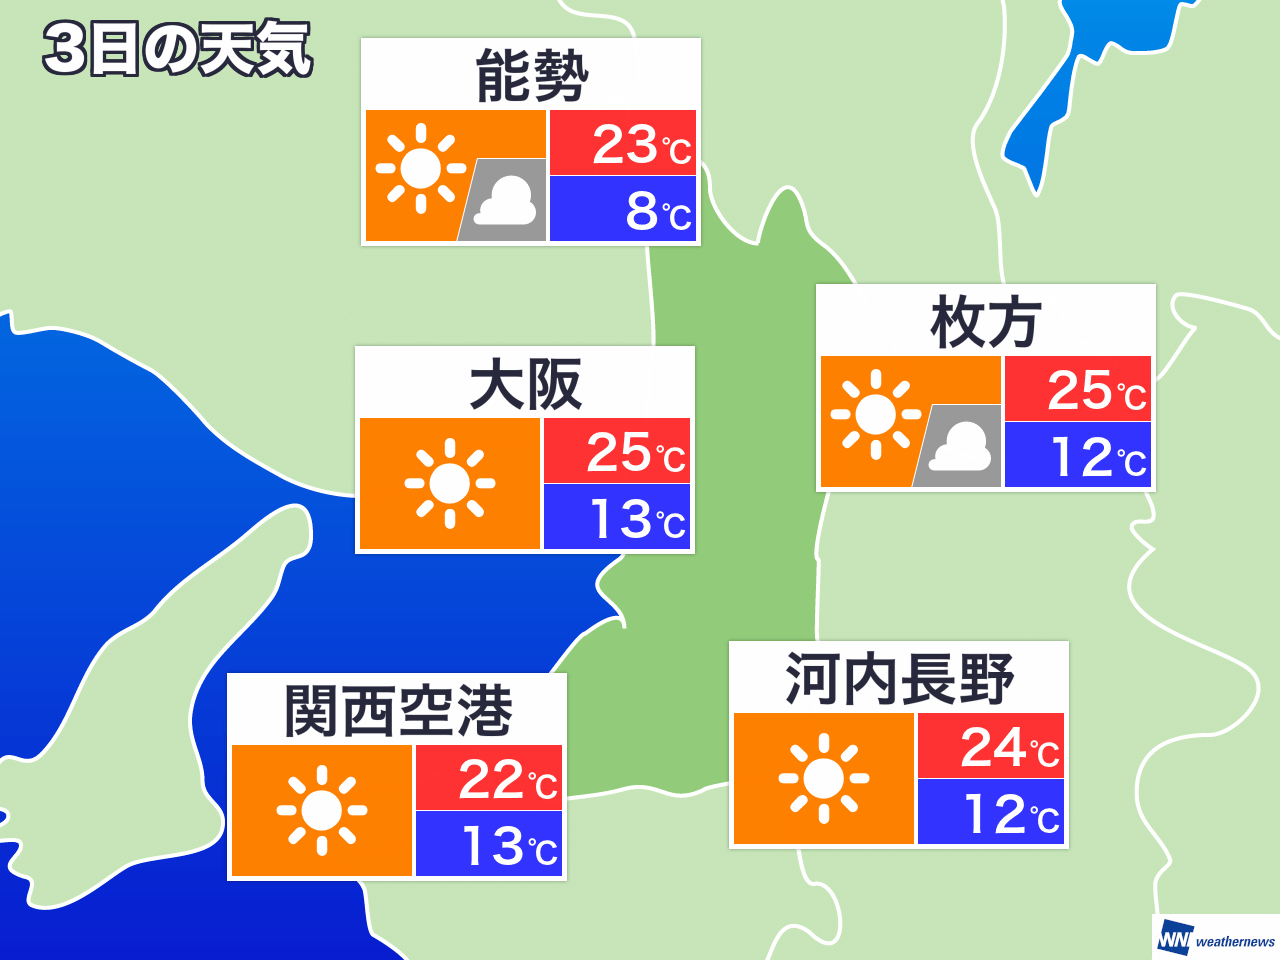 大阪 の 天気 今日 は の